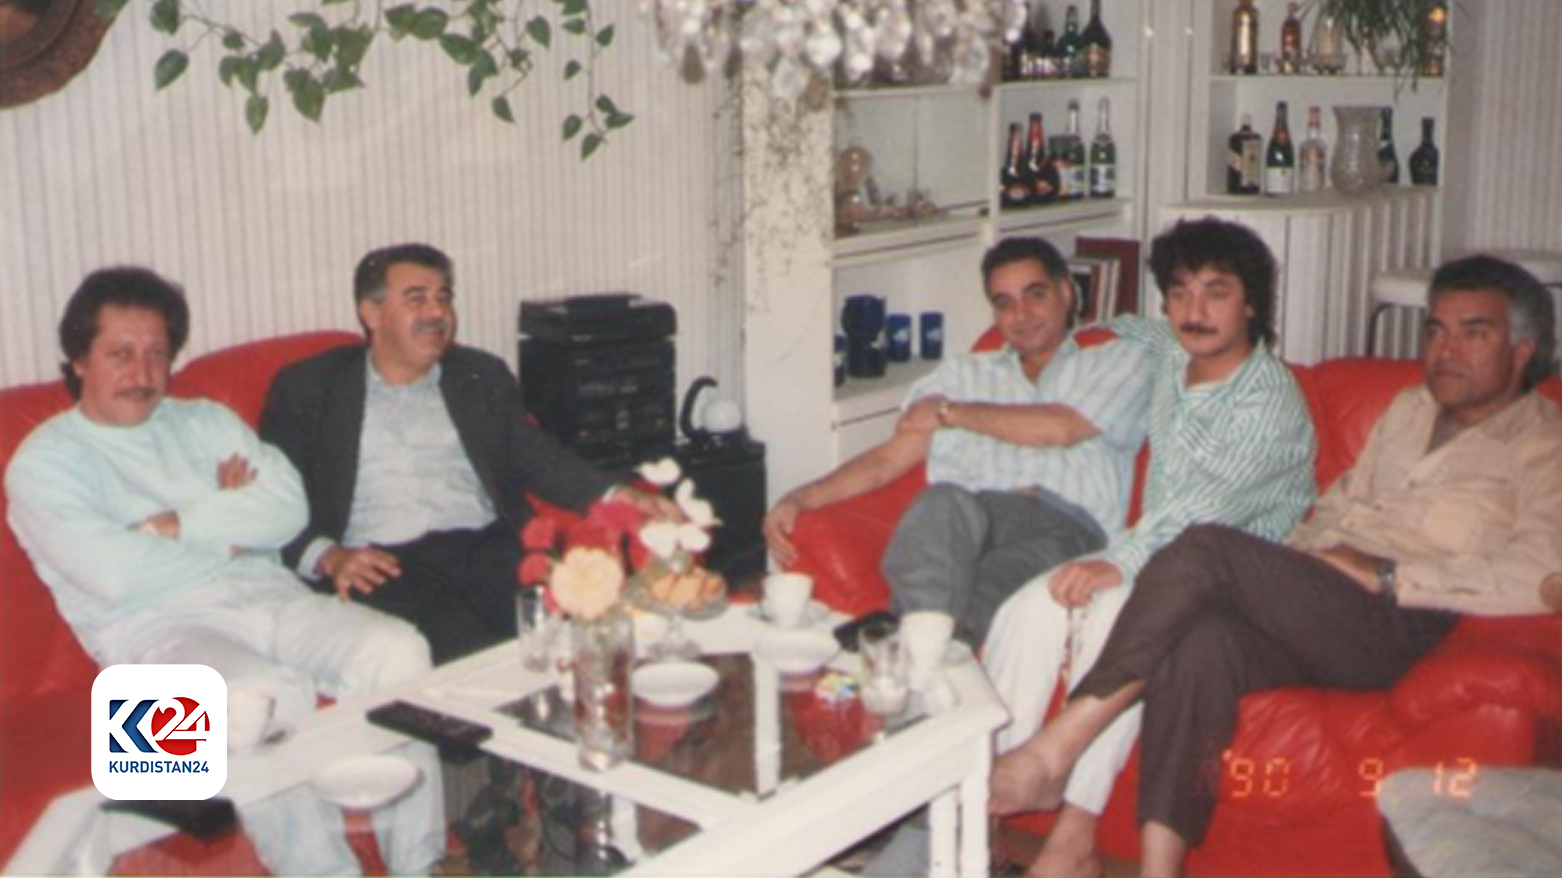 د. شعبان مع كوكب حمزة والشاعر جليل حيدر والمطرب حميد منصور والكاتب كاظم الموسوي في 12 أيلول / سبتمبر 1990